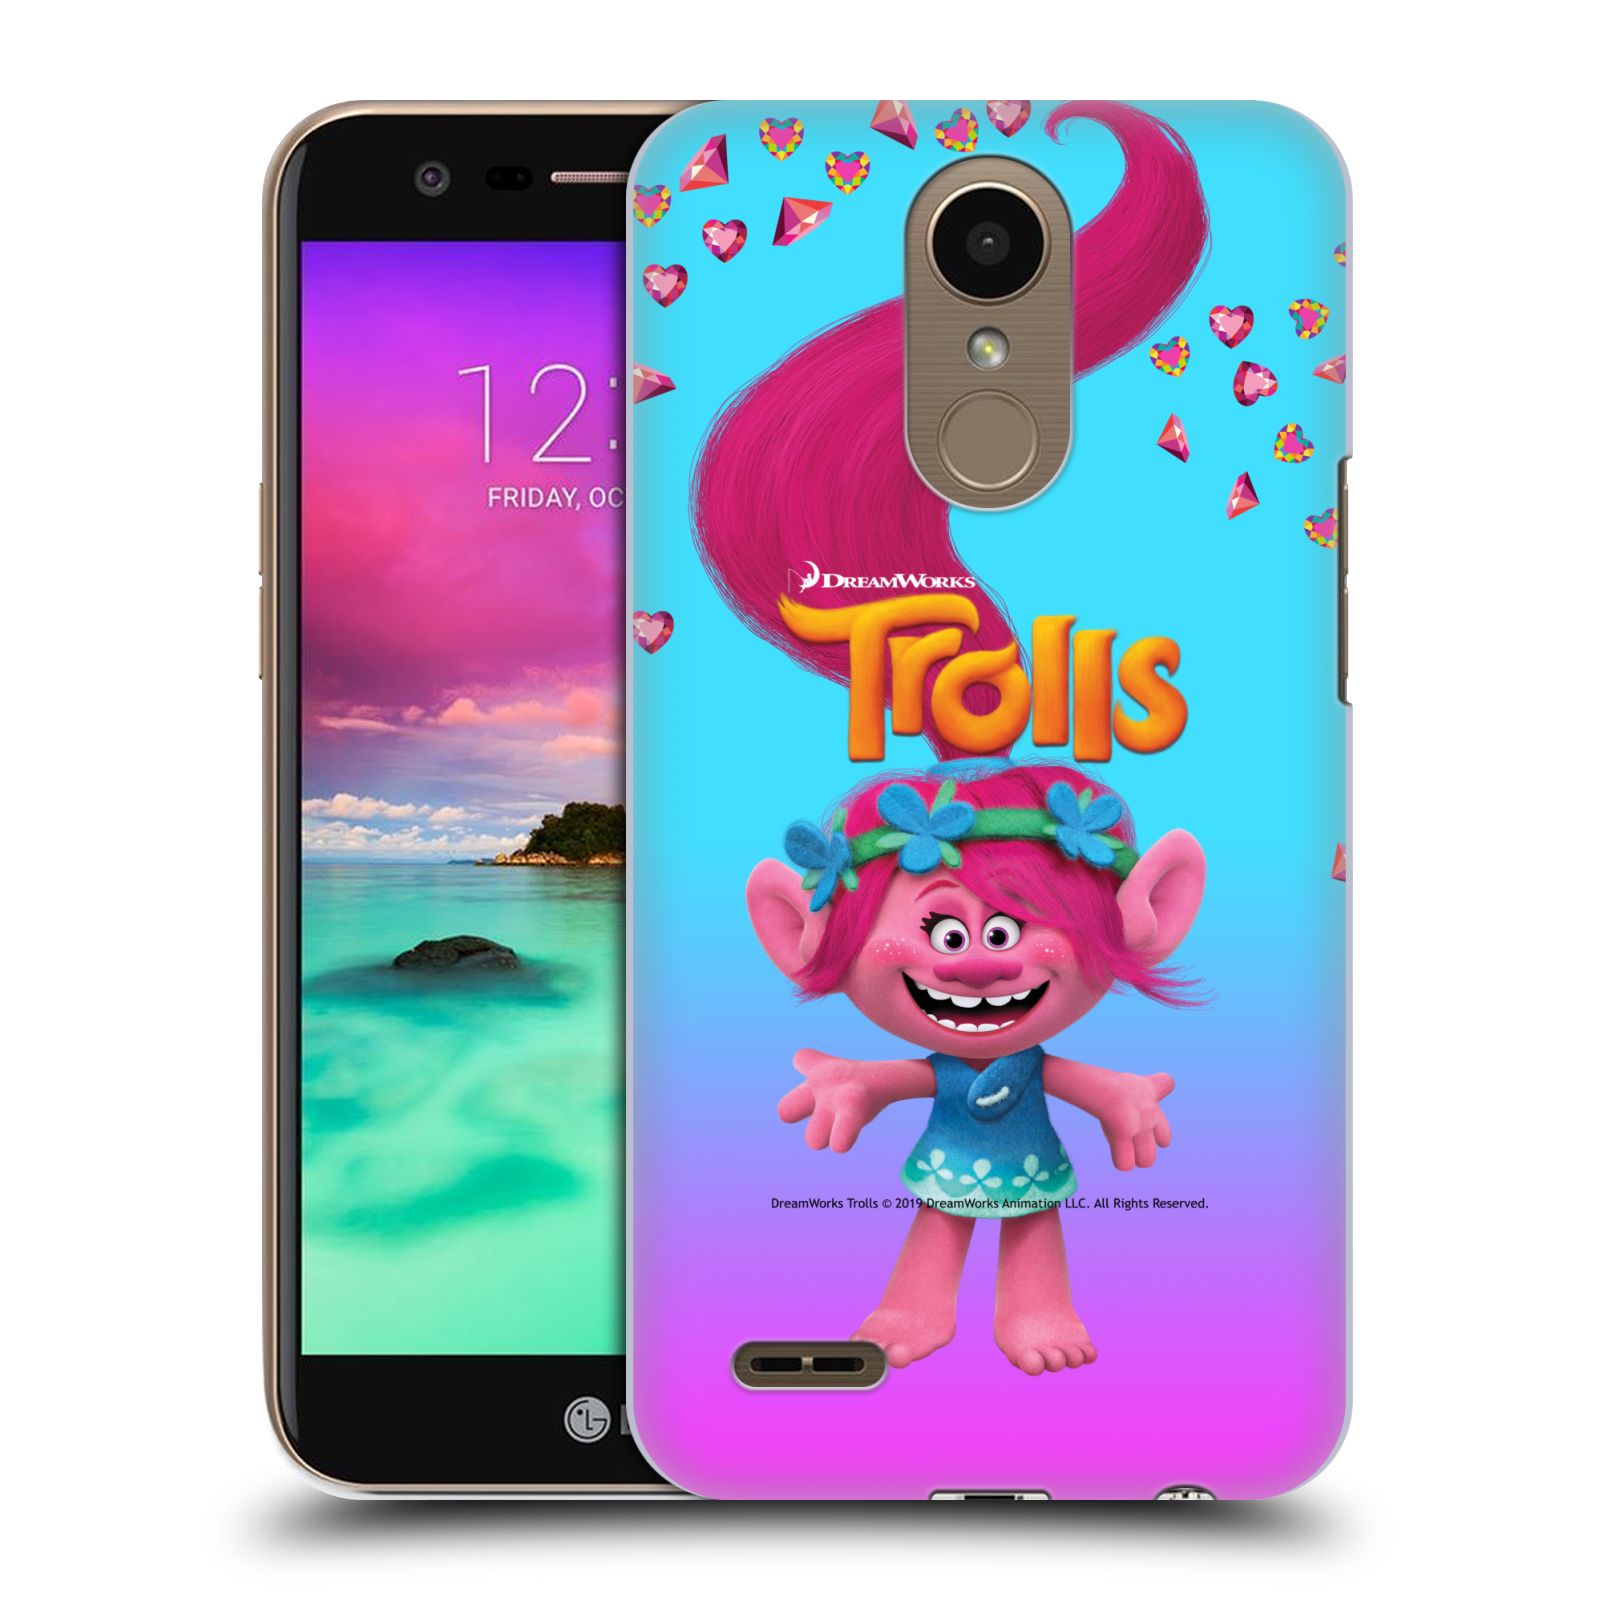 Pouzdro na mobil LG K10 2017 / K10 2017 DUAL SIM - HEAD CASE - Pohádka - Trollové skřítek holčička Poppy